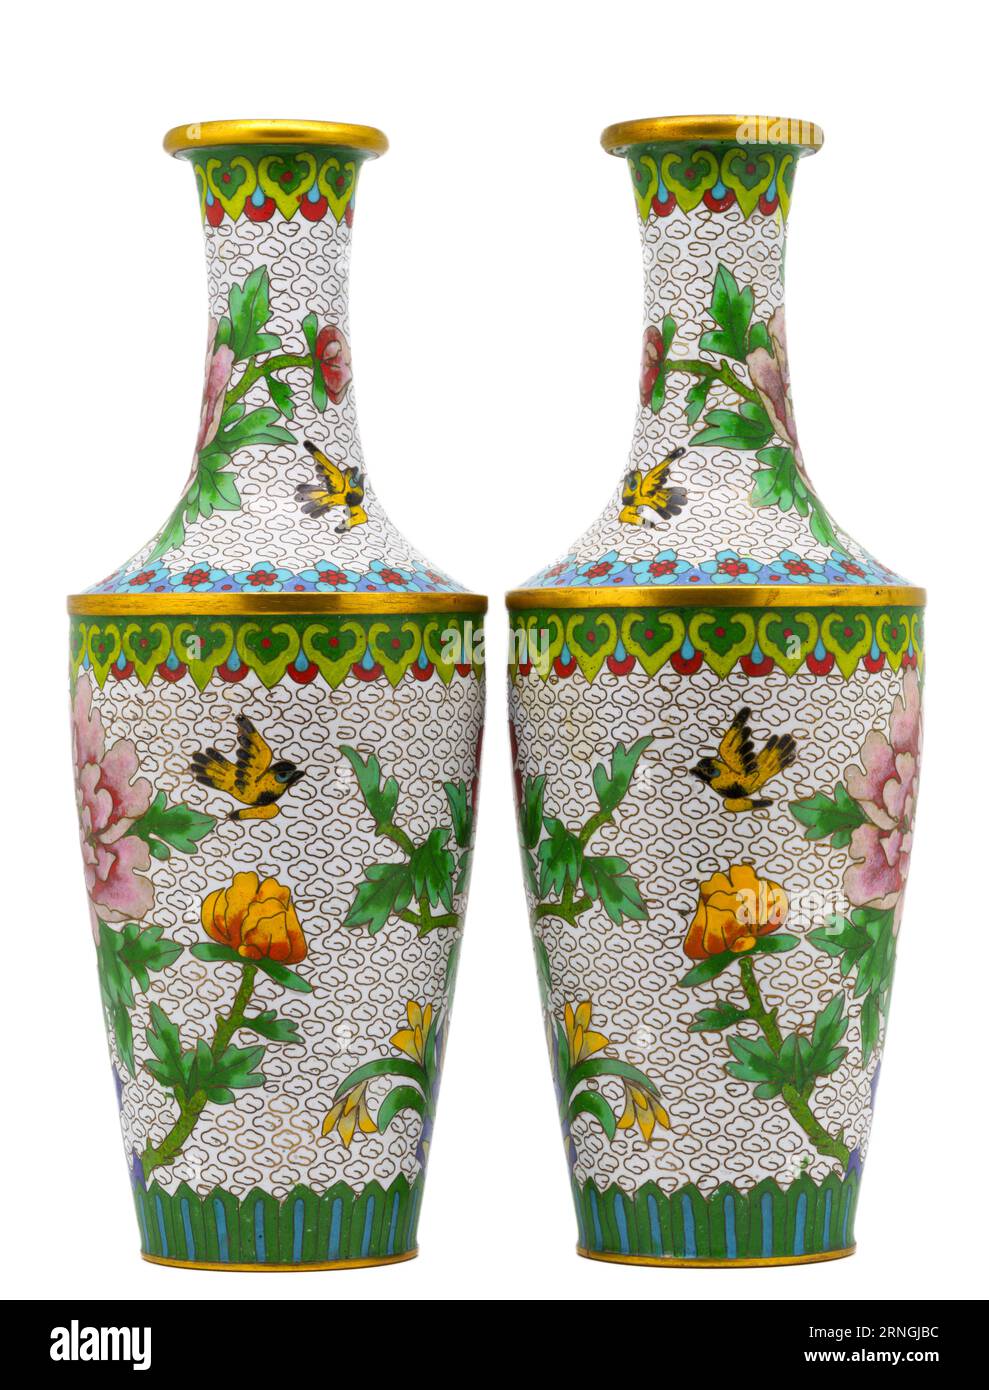 Une photographie haute résolution d'une paire de vases cloisonnés aux couleurs vives et joliment ornés, ornés de fleurs rouges, jaunes, bleues et roses Banque D'Images